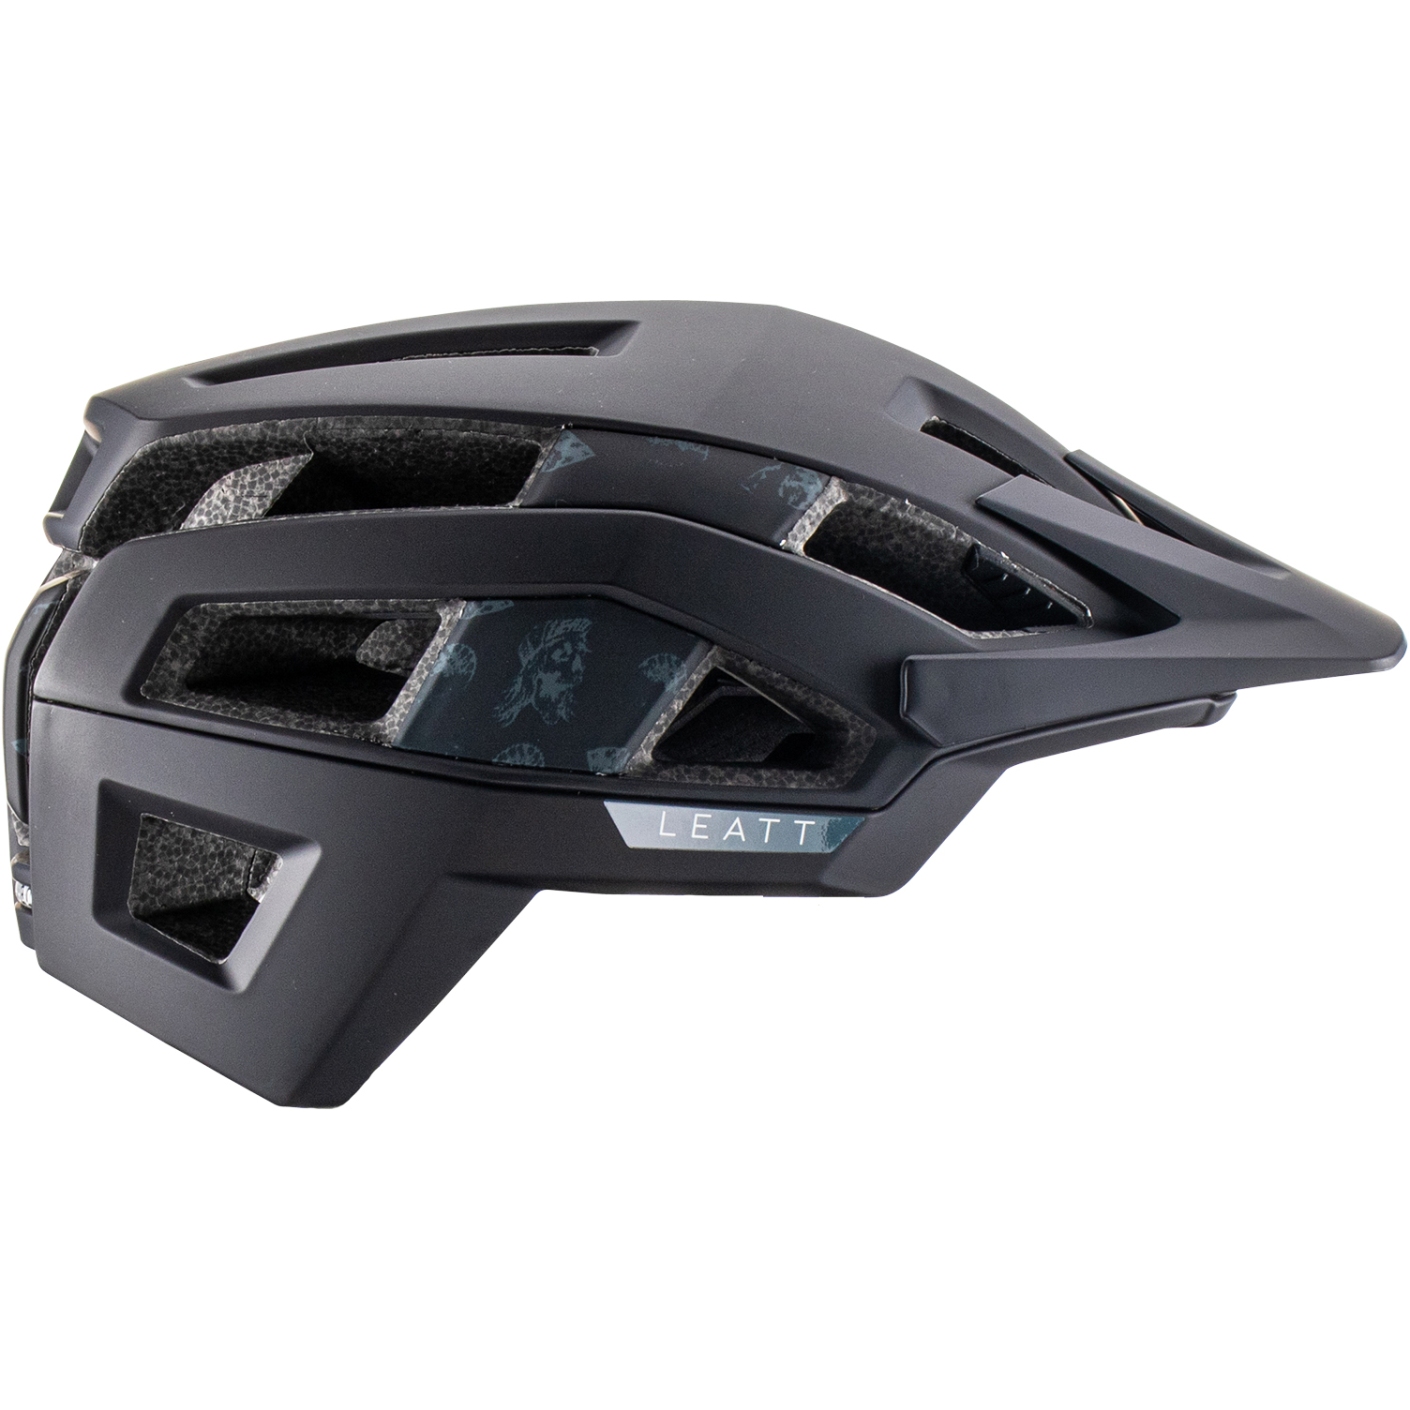 Produktbild von Leatt MTB Trail 3.0 Helm - schwarz